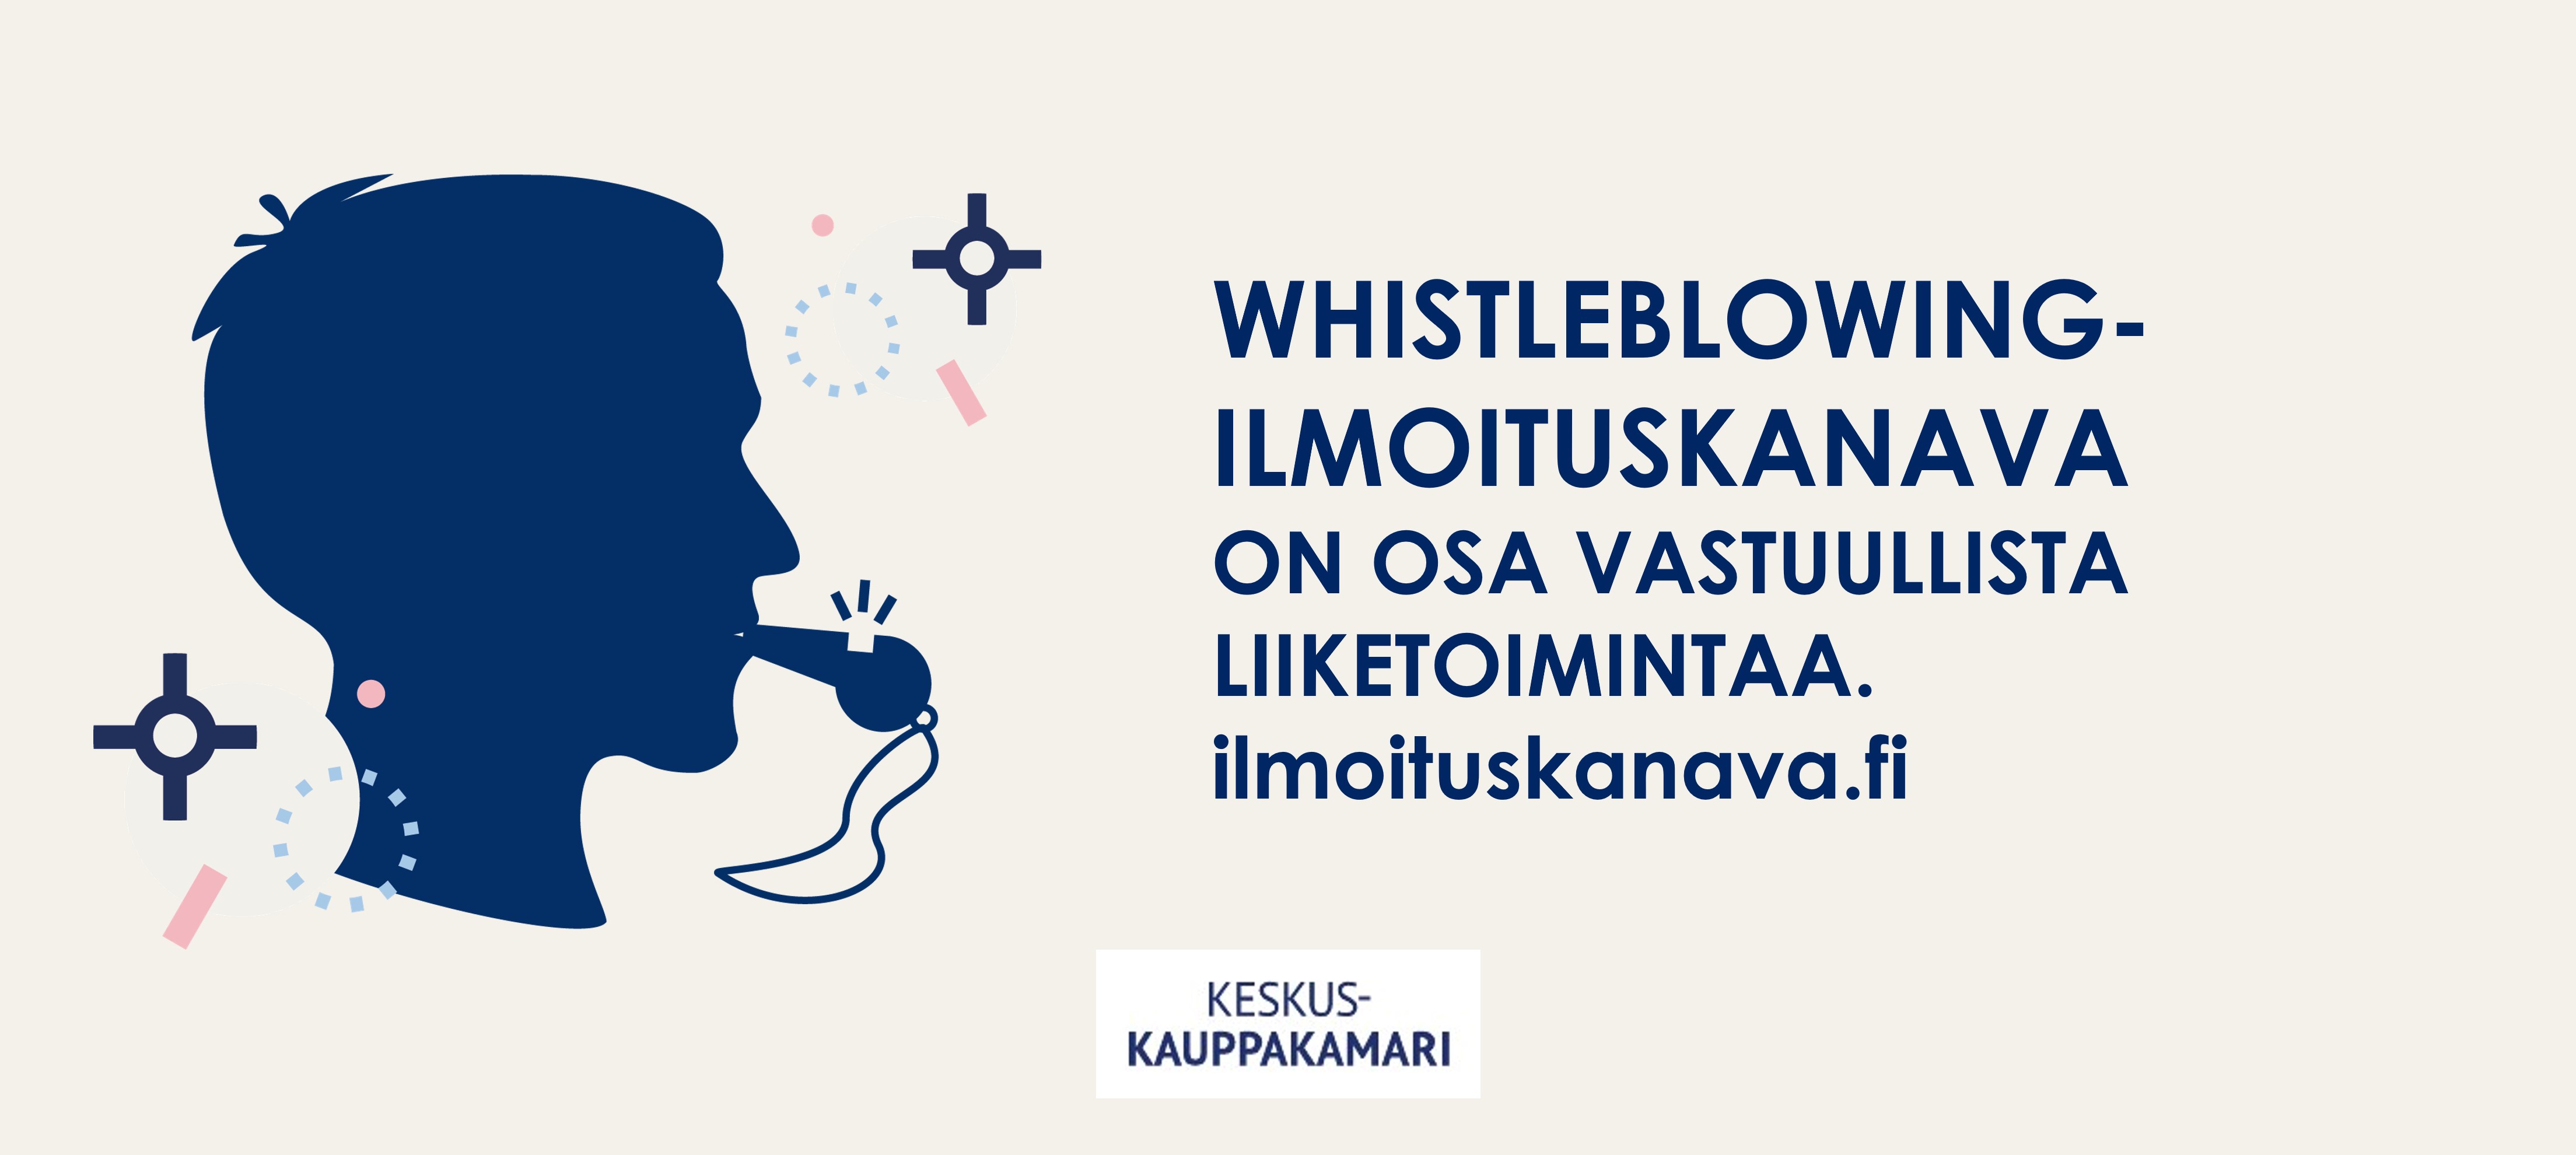 whistleblowing-ilmoituskanava-on-osa-vastuullista-liiketoimintaa.jpg (398 KB)